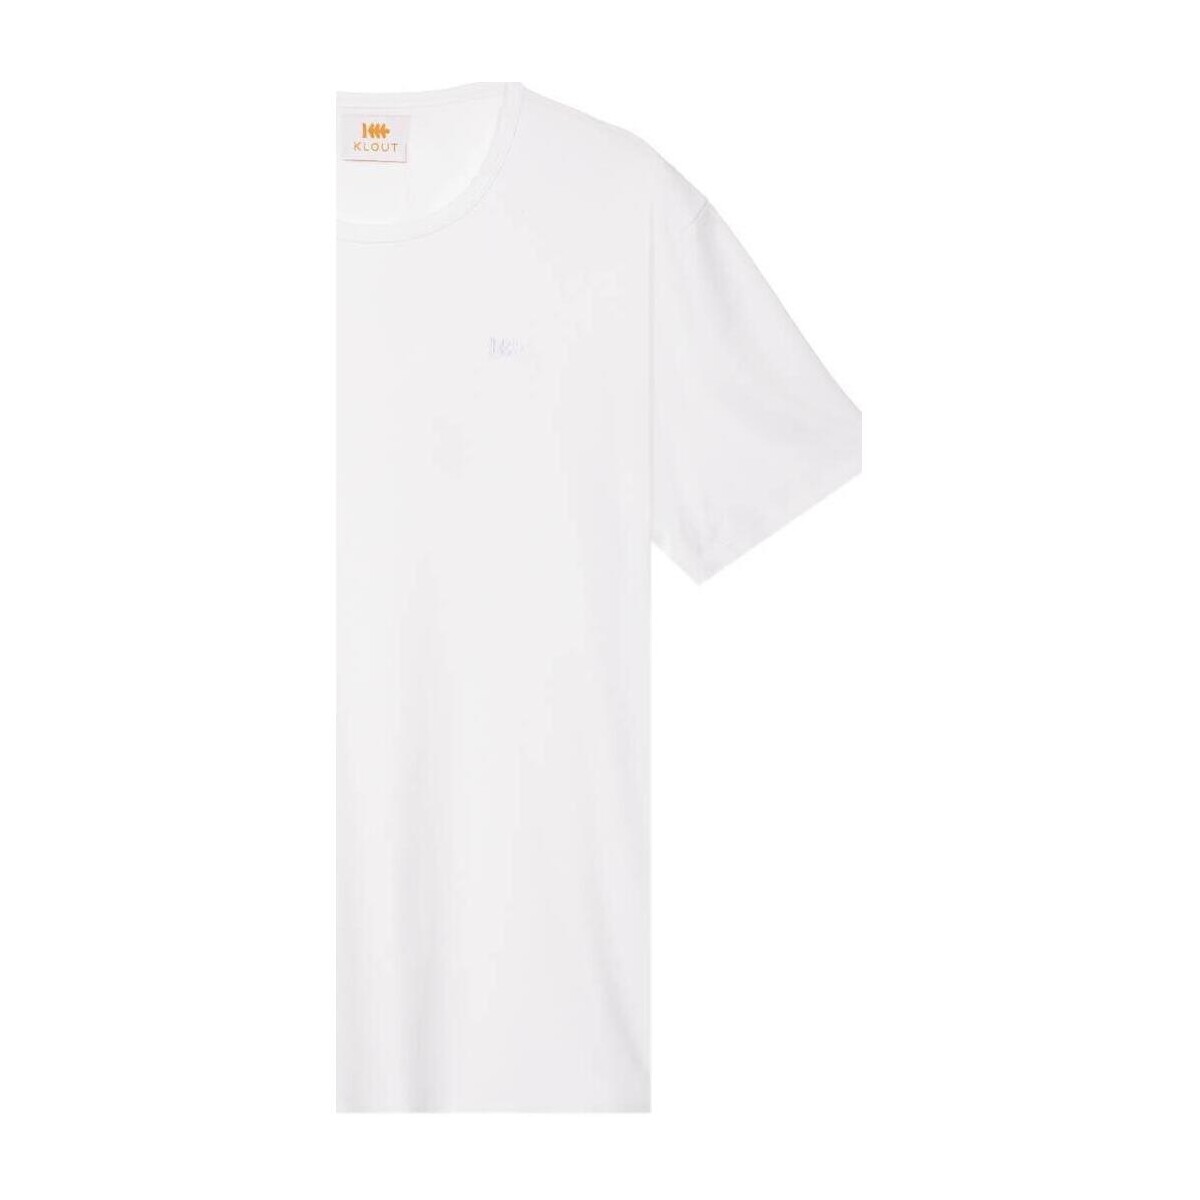 textil Camisetas manga corta Klout CAMISETA ORGANIC PREMIUM Blanco